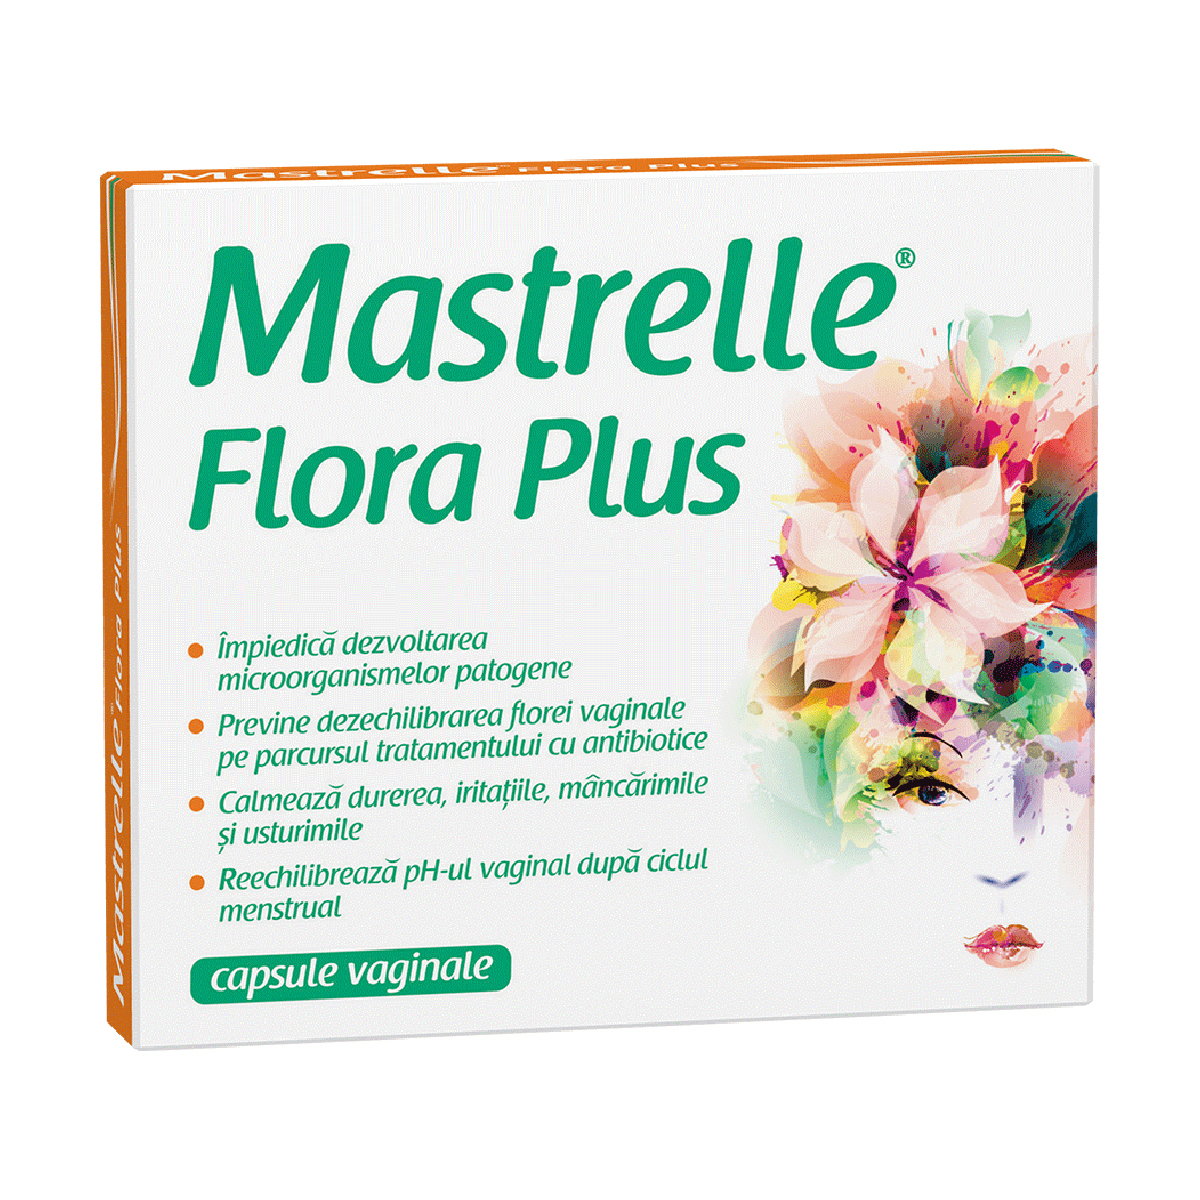 Mastrelle Flora Plus, 10 capsule vaginale Mastrelle imagine 2022